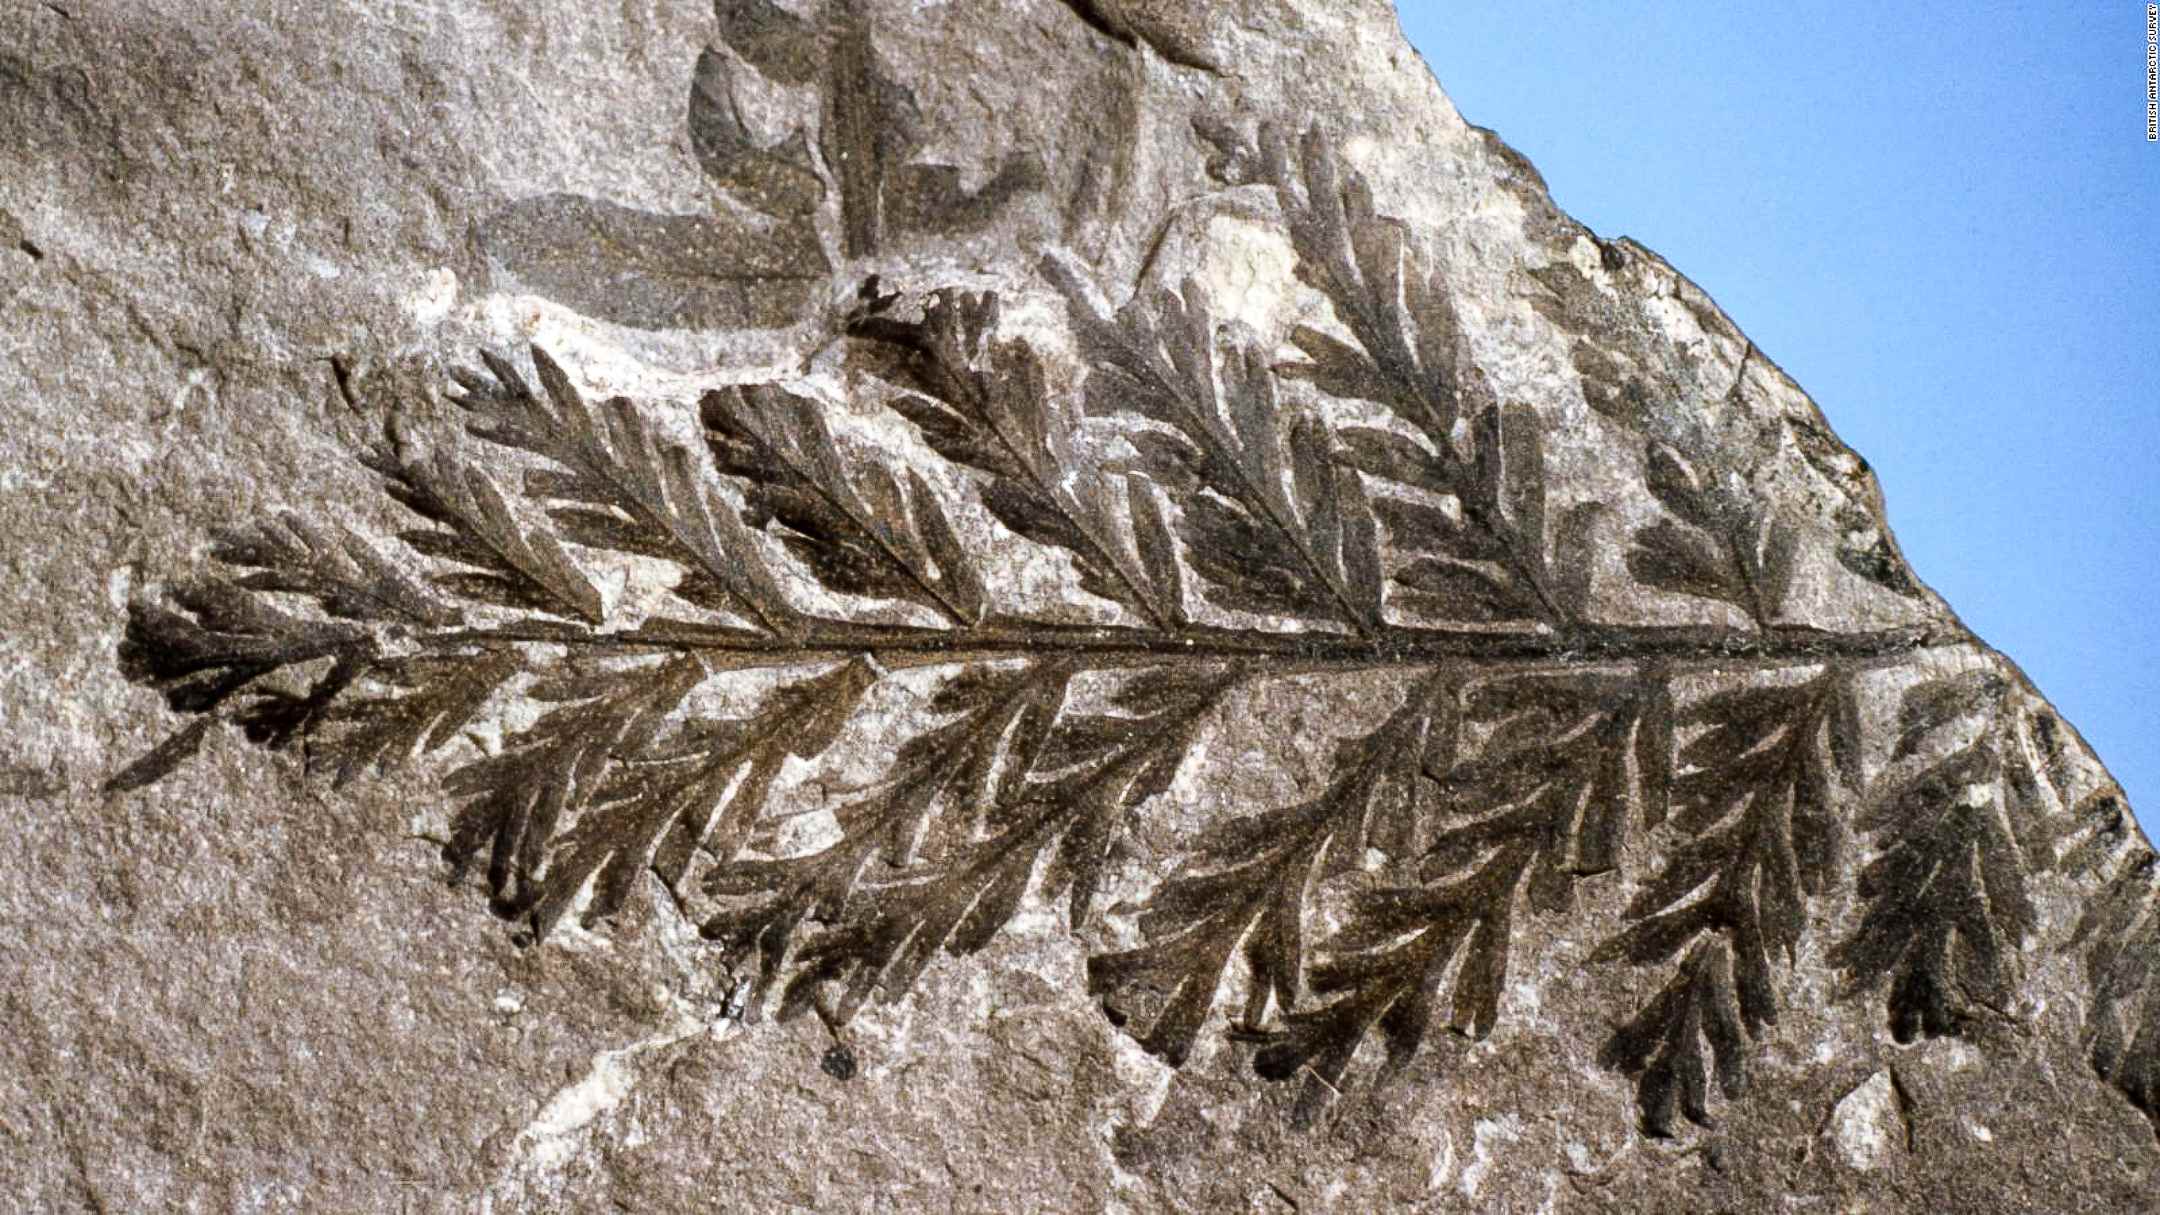 Ua ʻike nā kānaka ʻepekema i nā hōʻike hou aʻe o ke ola o nā mea kanu ma ka ʻāina, me kēia fern fossilized mai ka British Antarctic Survey (BAS) fossil collection.